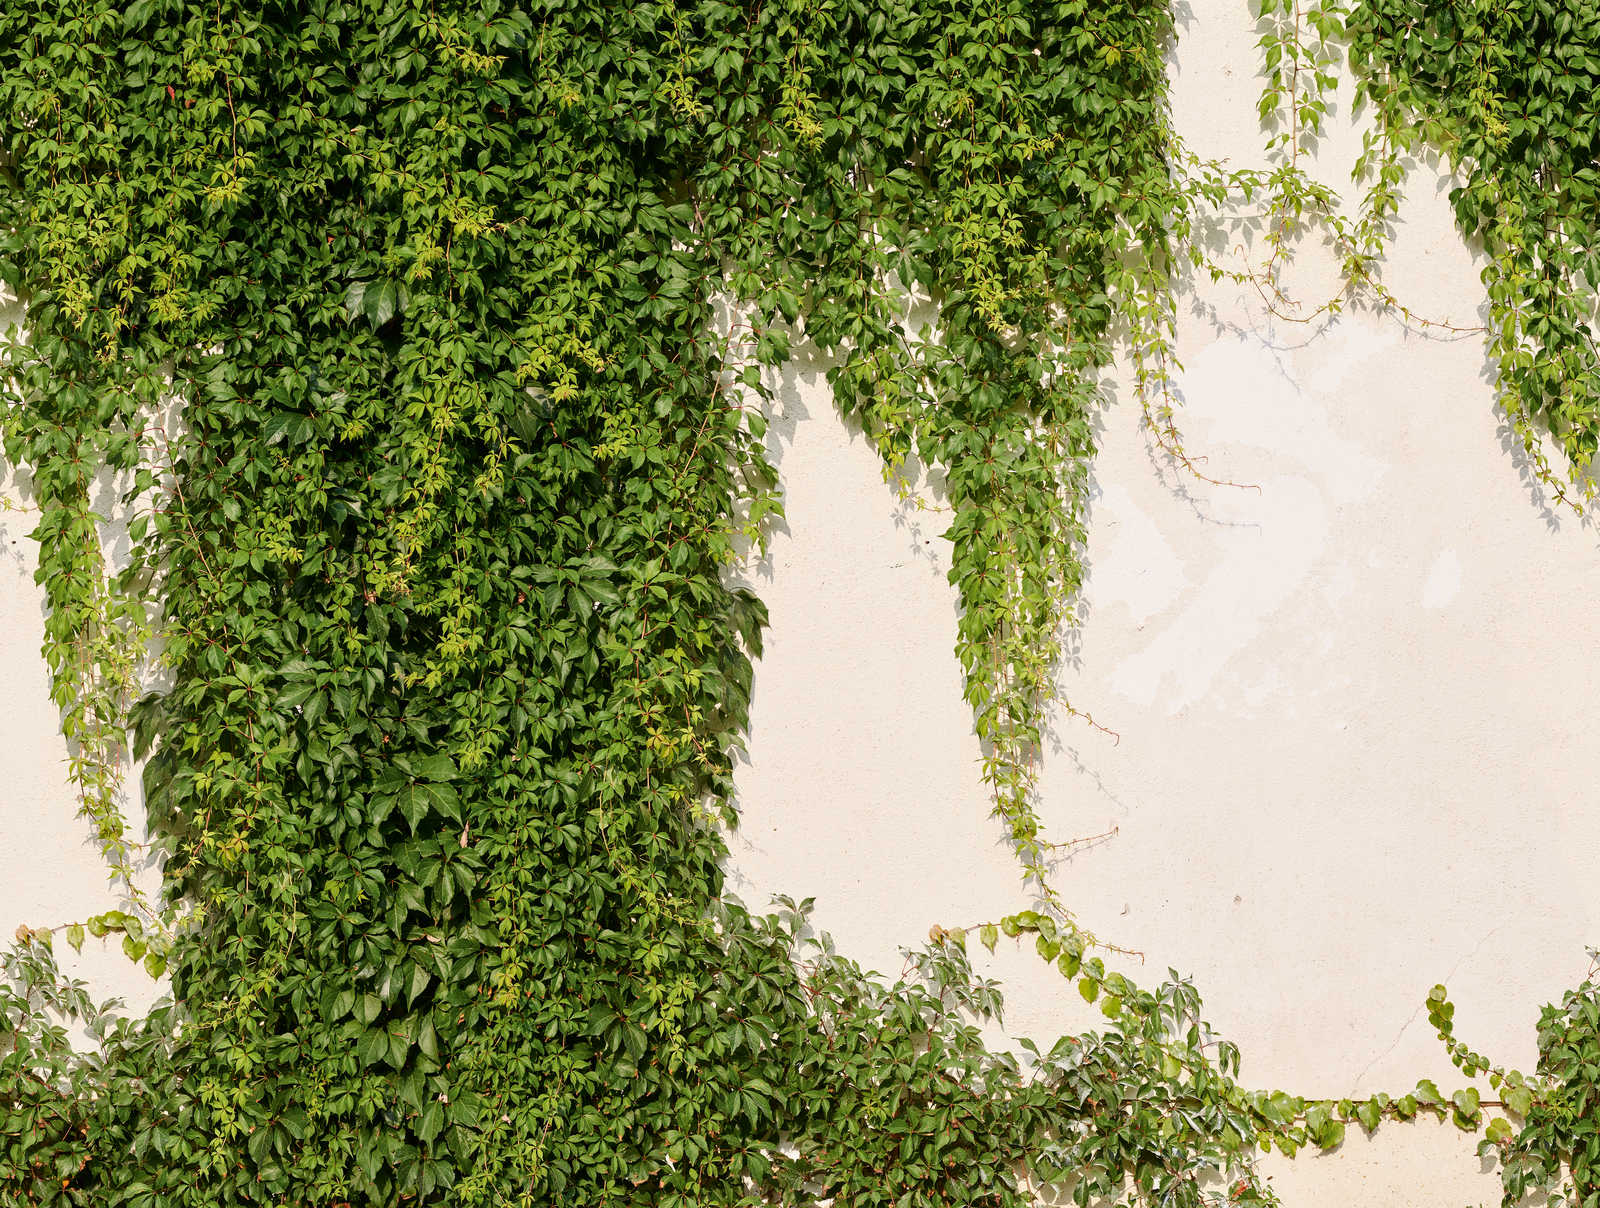             Vliesbehang Ivy muur in gedurfde kleuren - groen, crème
        